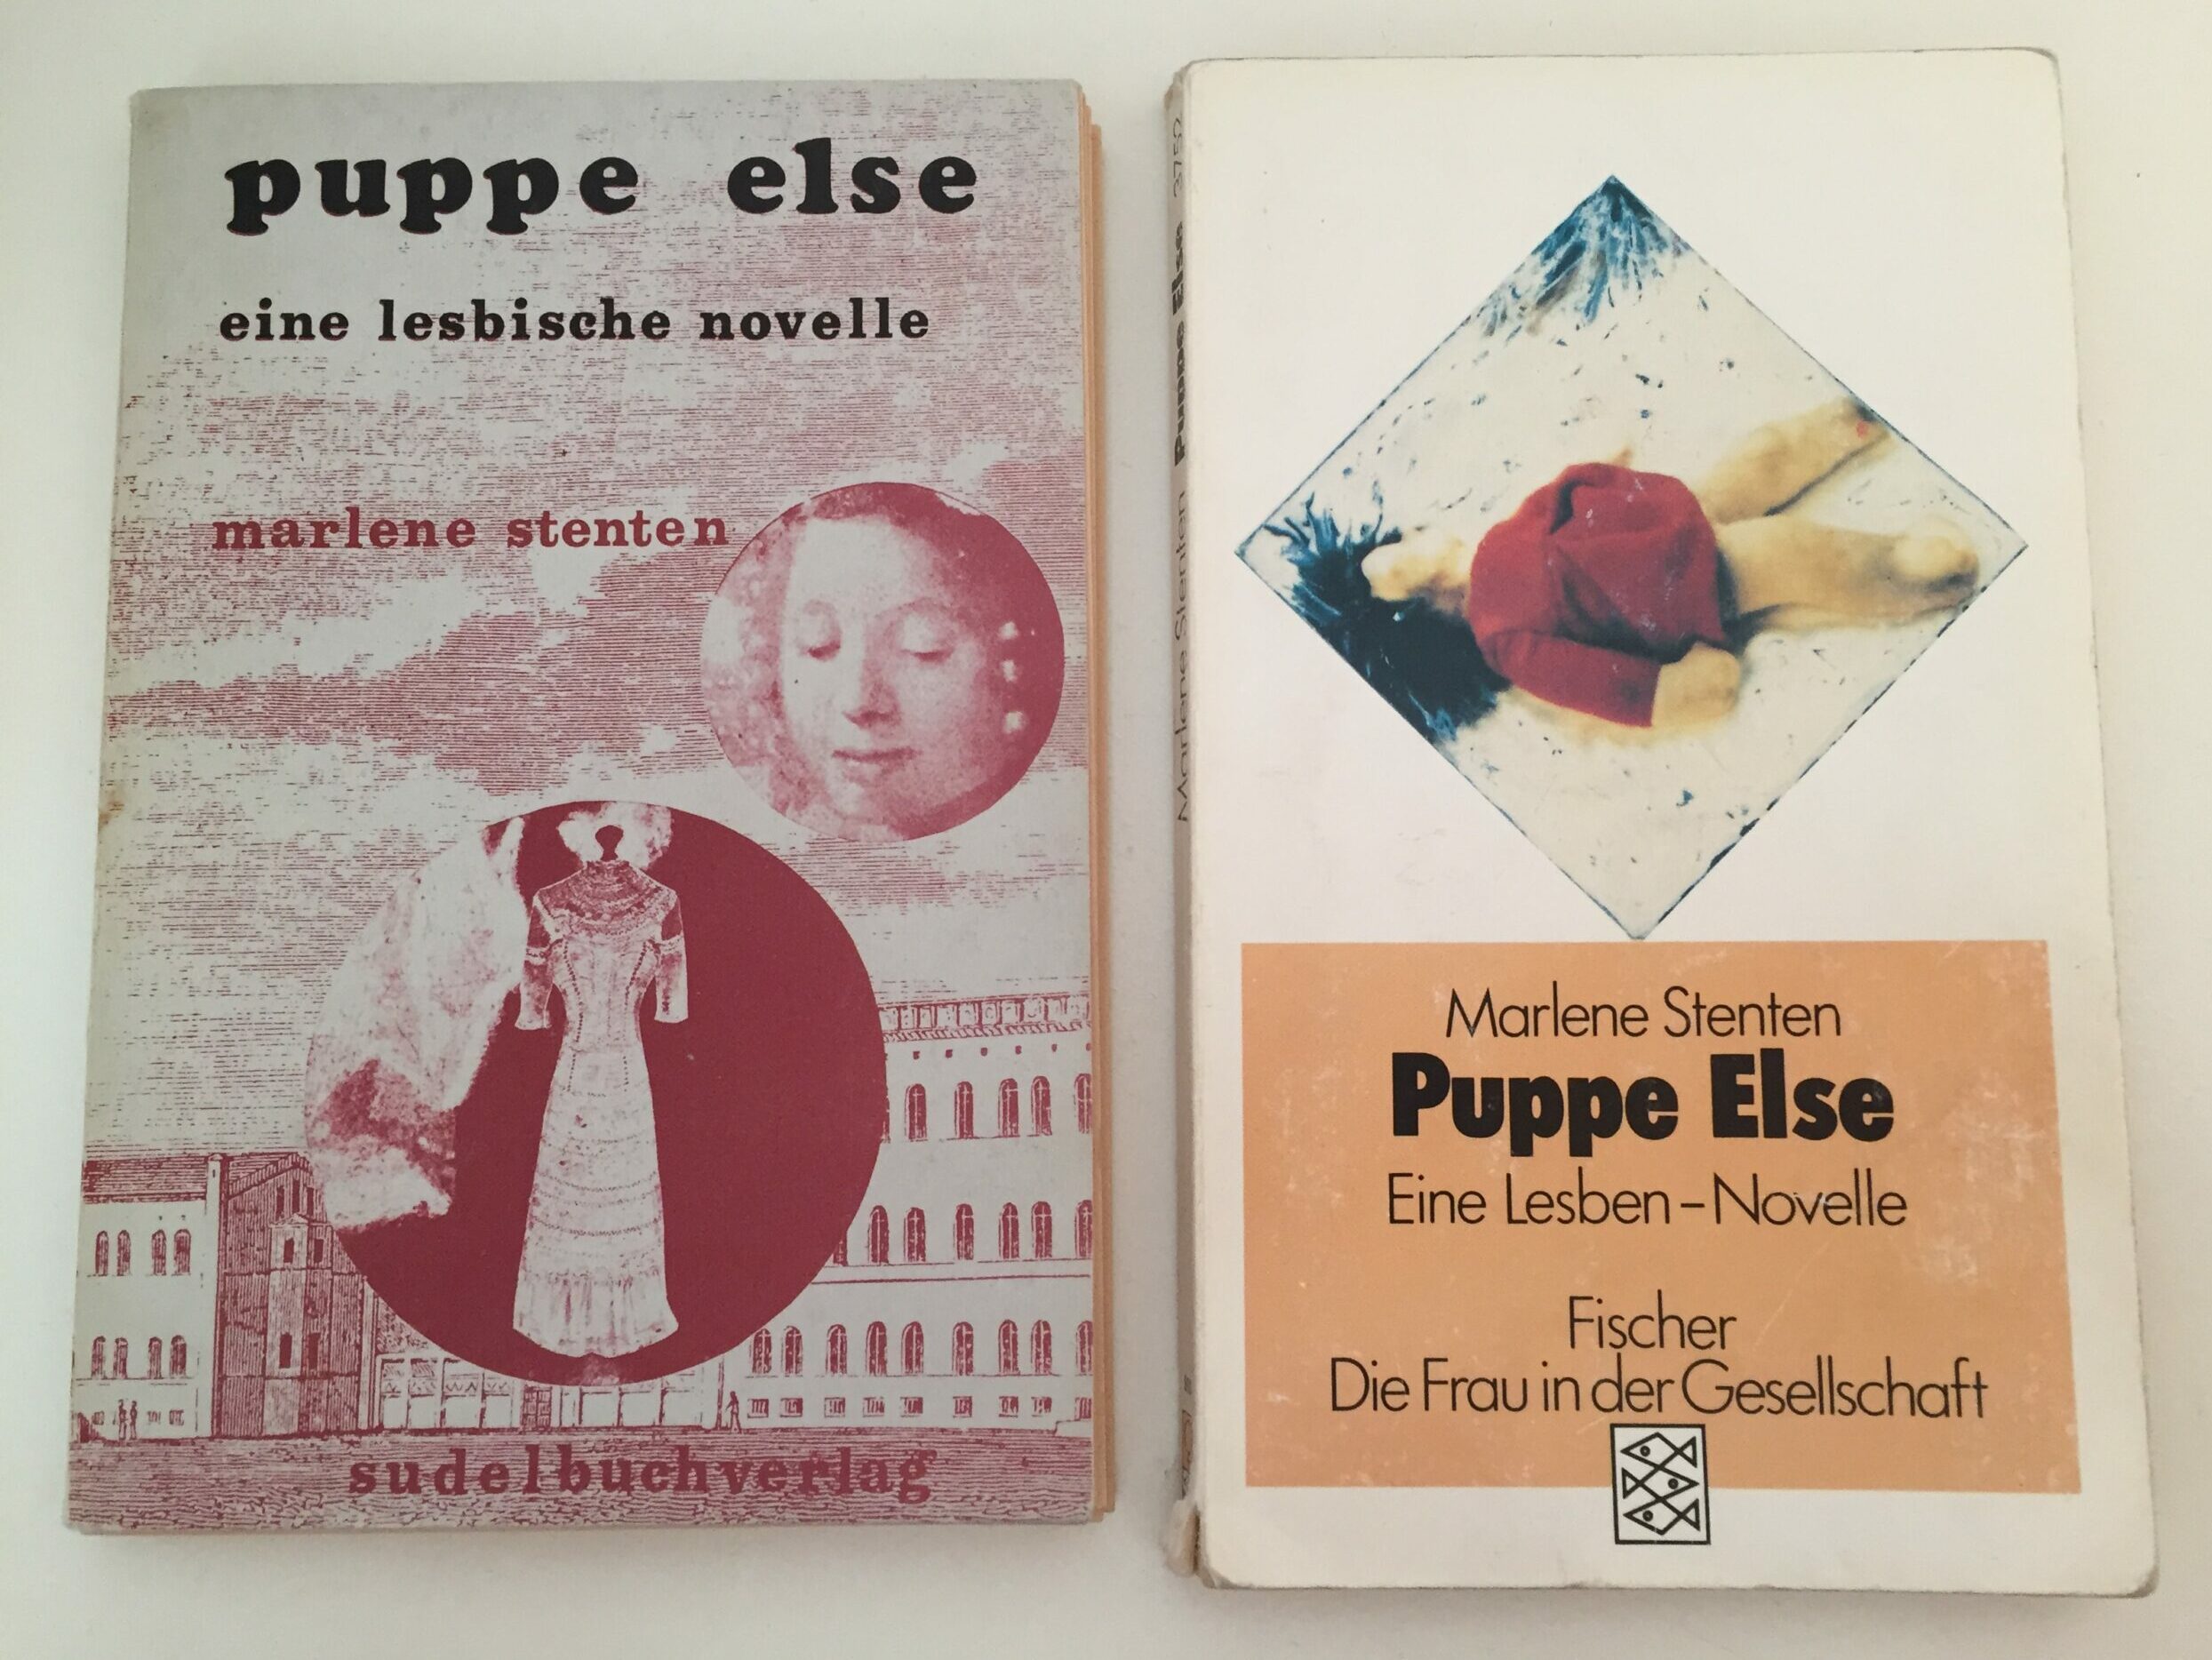 Das Foto zeigt zwei physische Buchausgaben der im Text besprochenen Novelle: Puppe Else - Eine Lesben-Novelle